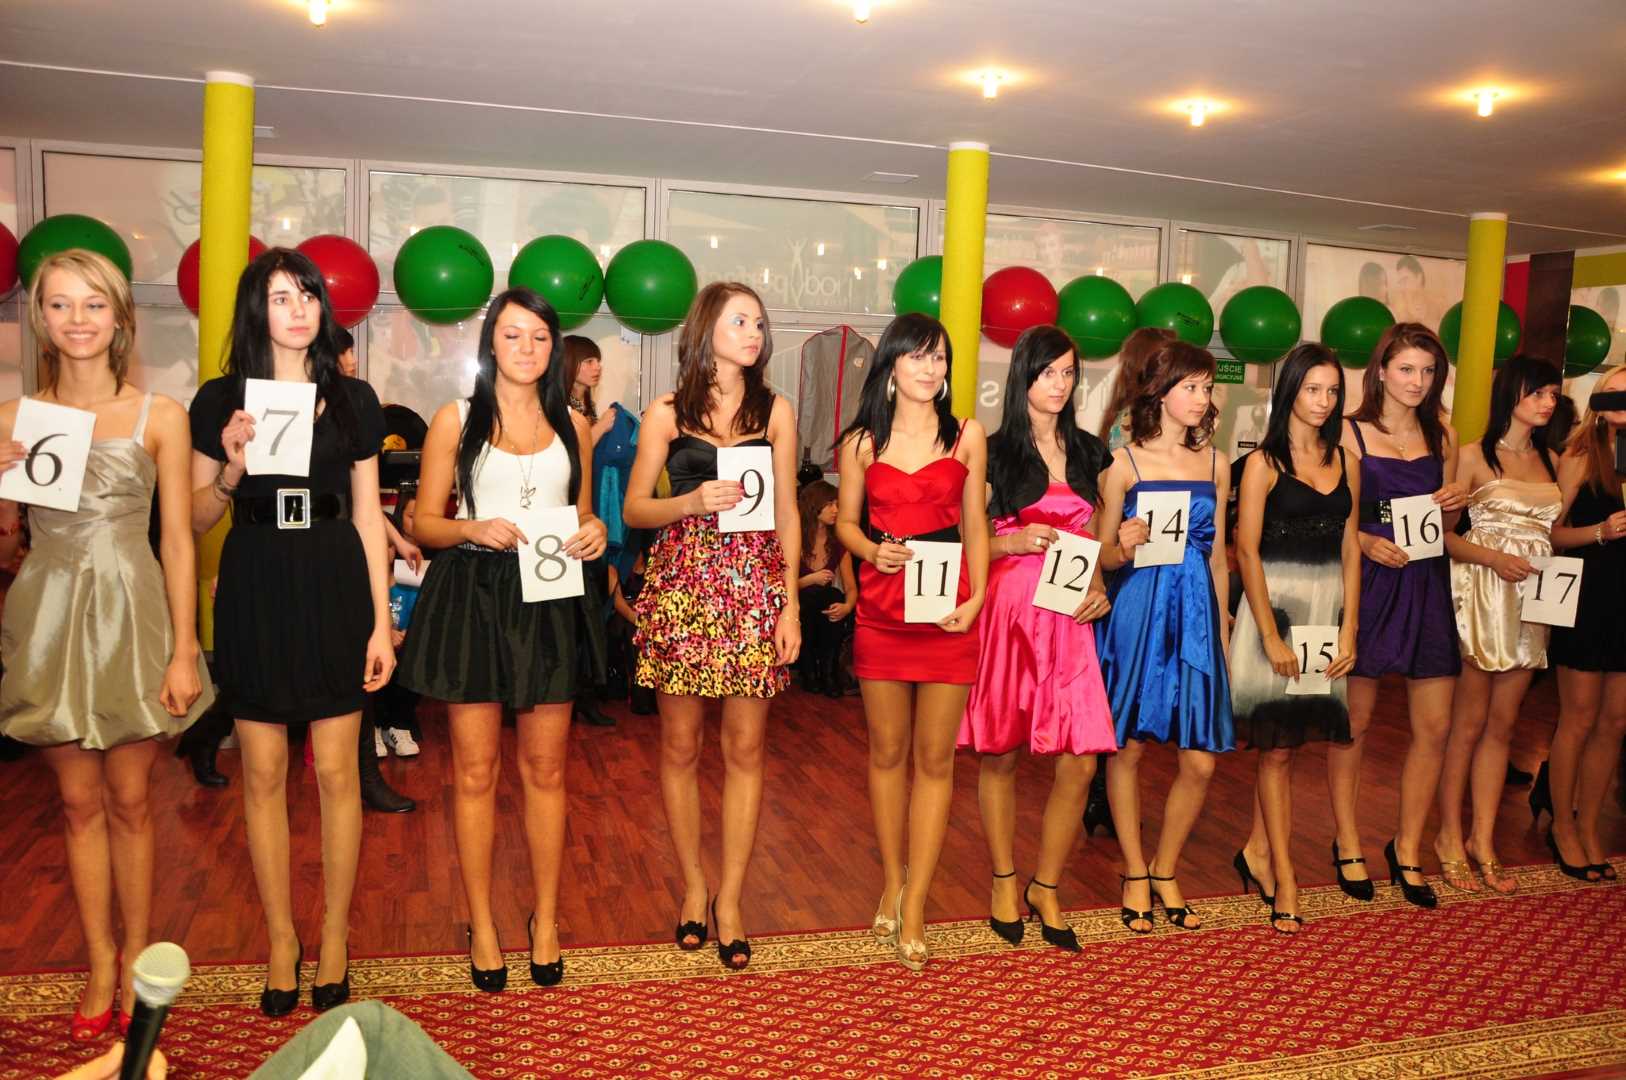 , Casting do konkursu piękności Miss Warmii i Mazur 2010, Miss Warmii i Mazur